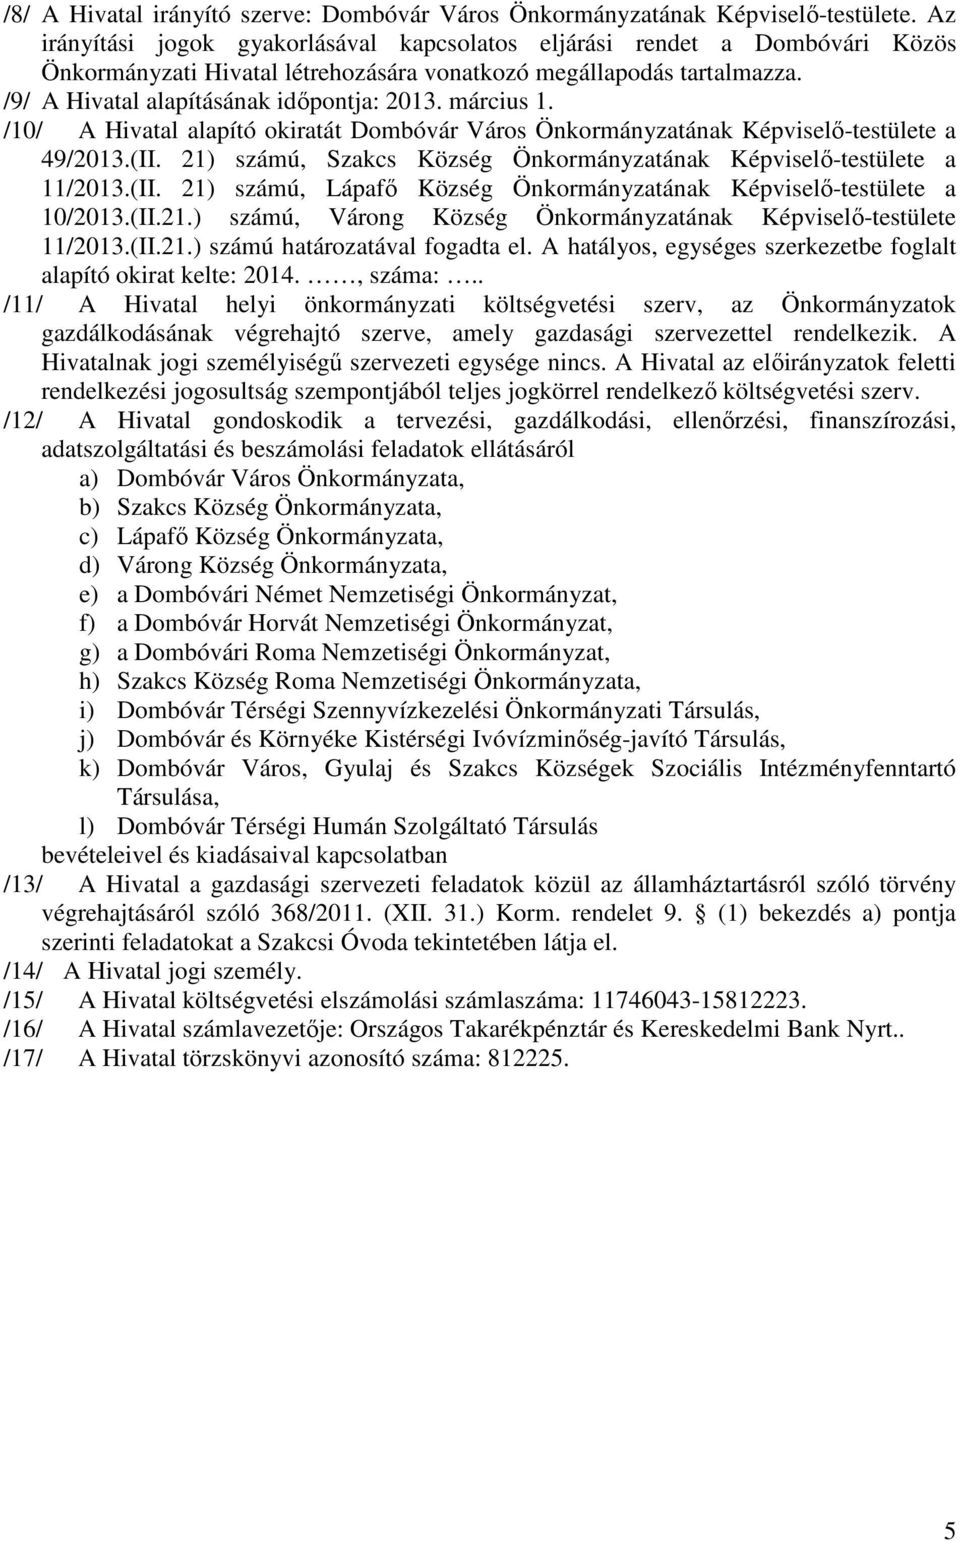 március 1. /10/ A Hivatal alapító okiratát Dombóvár Város Önkormányzatának Képviselő-testülete a 49/2013.(II. 21) számú, Szakcs Község Önkormányzatának Képviselő-testülete a 11/2013.(II. 21) számú, Lápafő Község Önkormányzatának Képviselő-testülete a 10/2013.